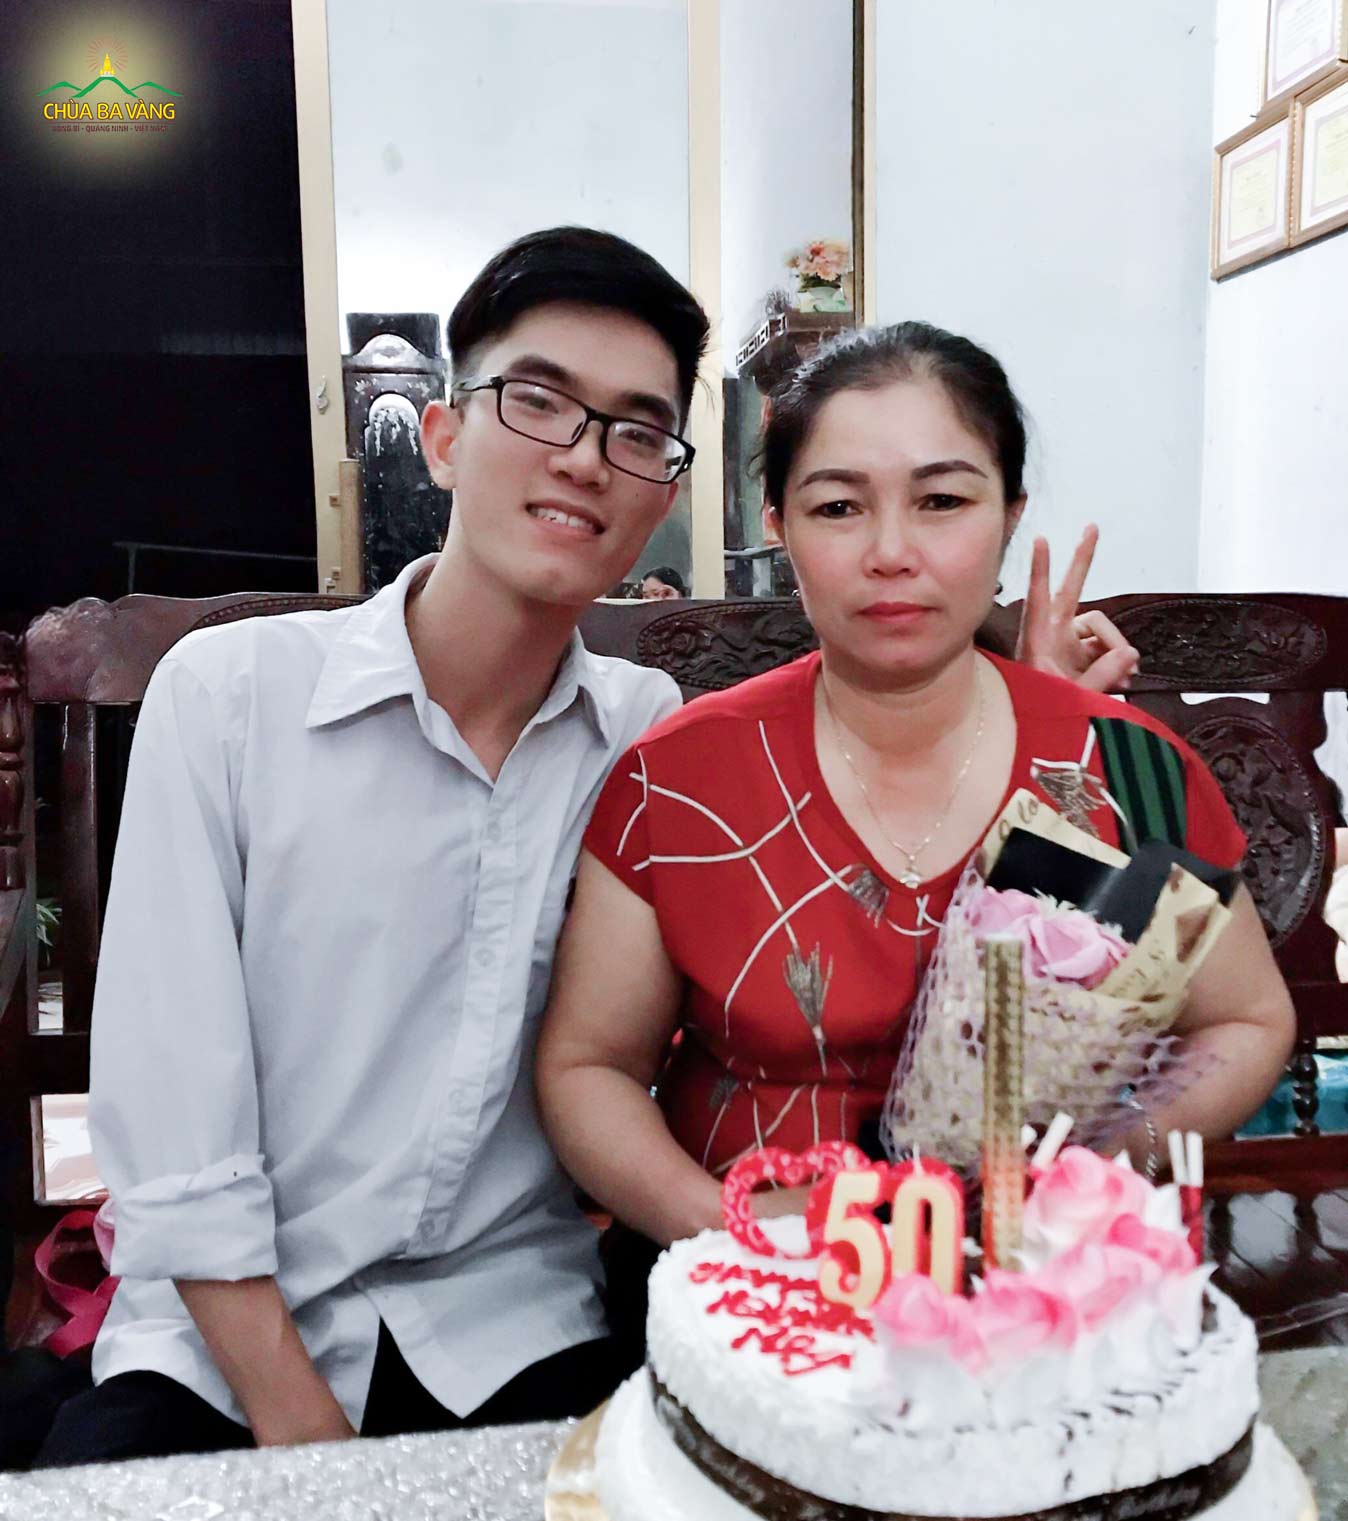 Hình ảnh Vượng chụp cùng mẹ nhân dịp sinh nhật lần thứ 50 của mẹ